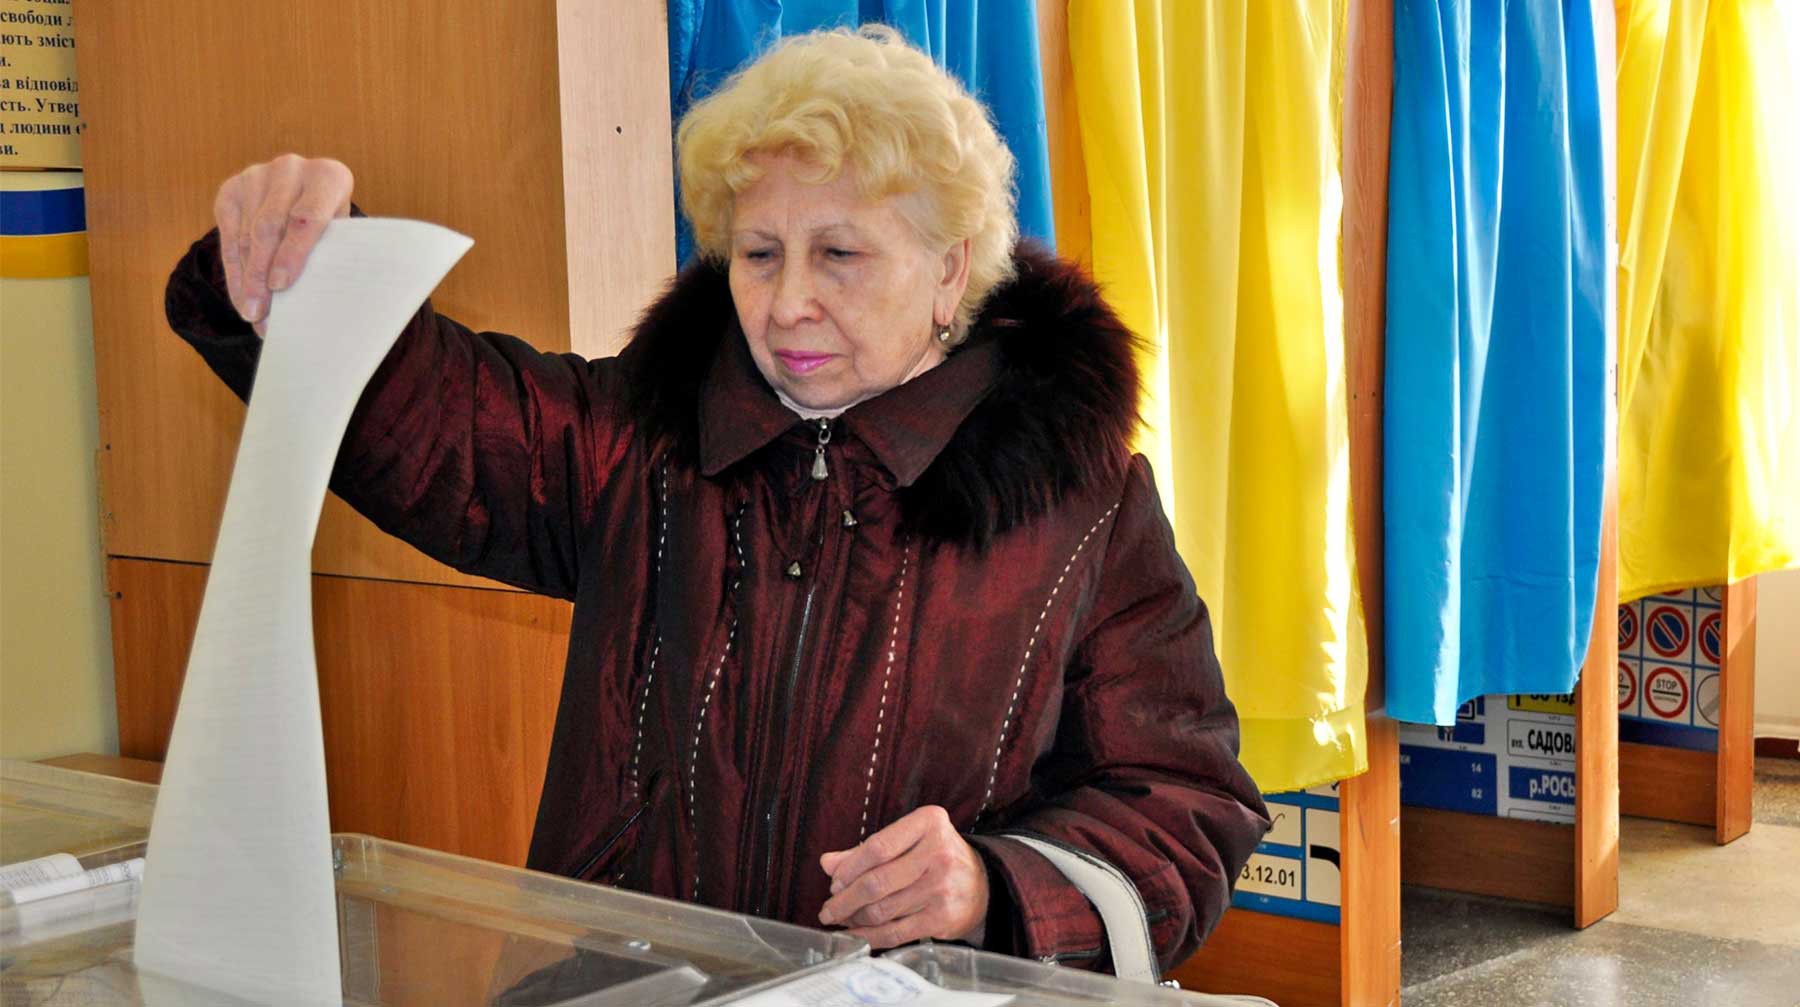 Dailystorm - Киев не допустил наблюдателей из Германии на выборы президента Украины